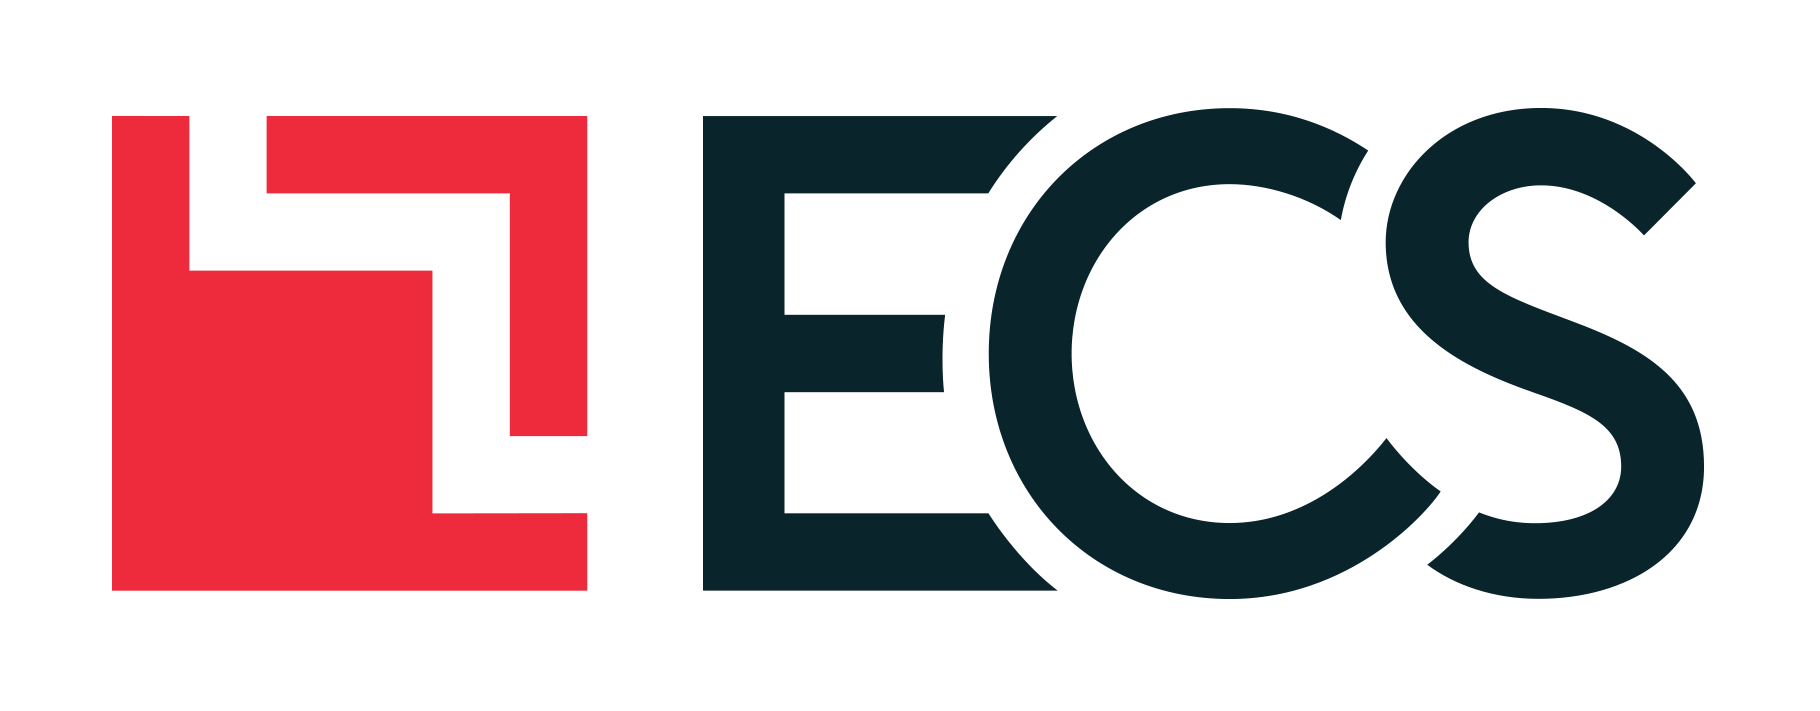 Federal Logo - Home — ECS